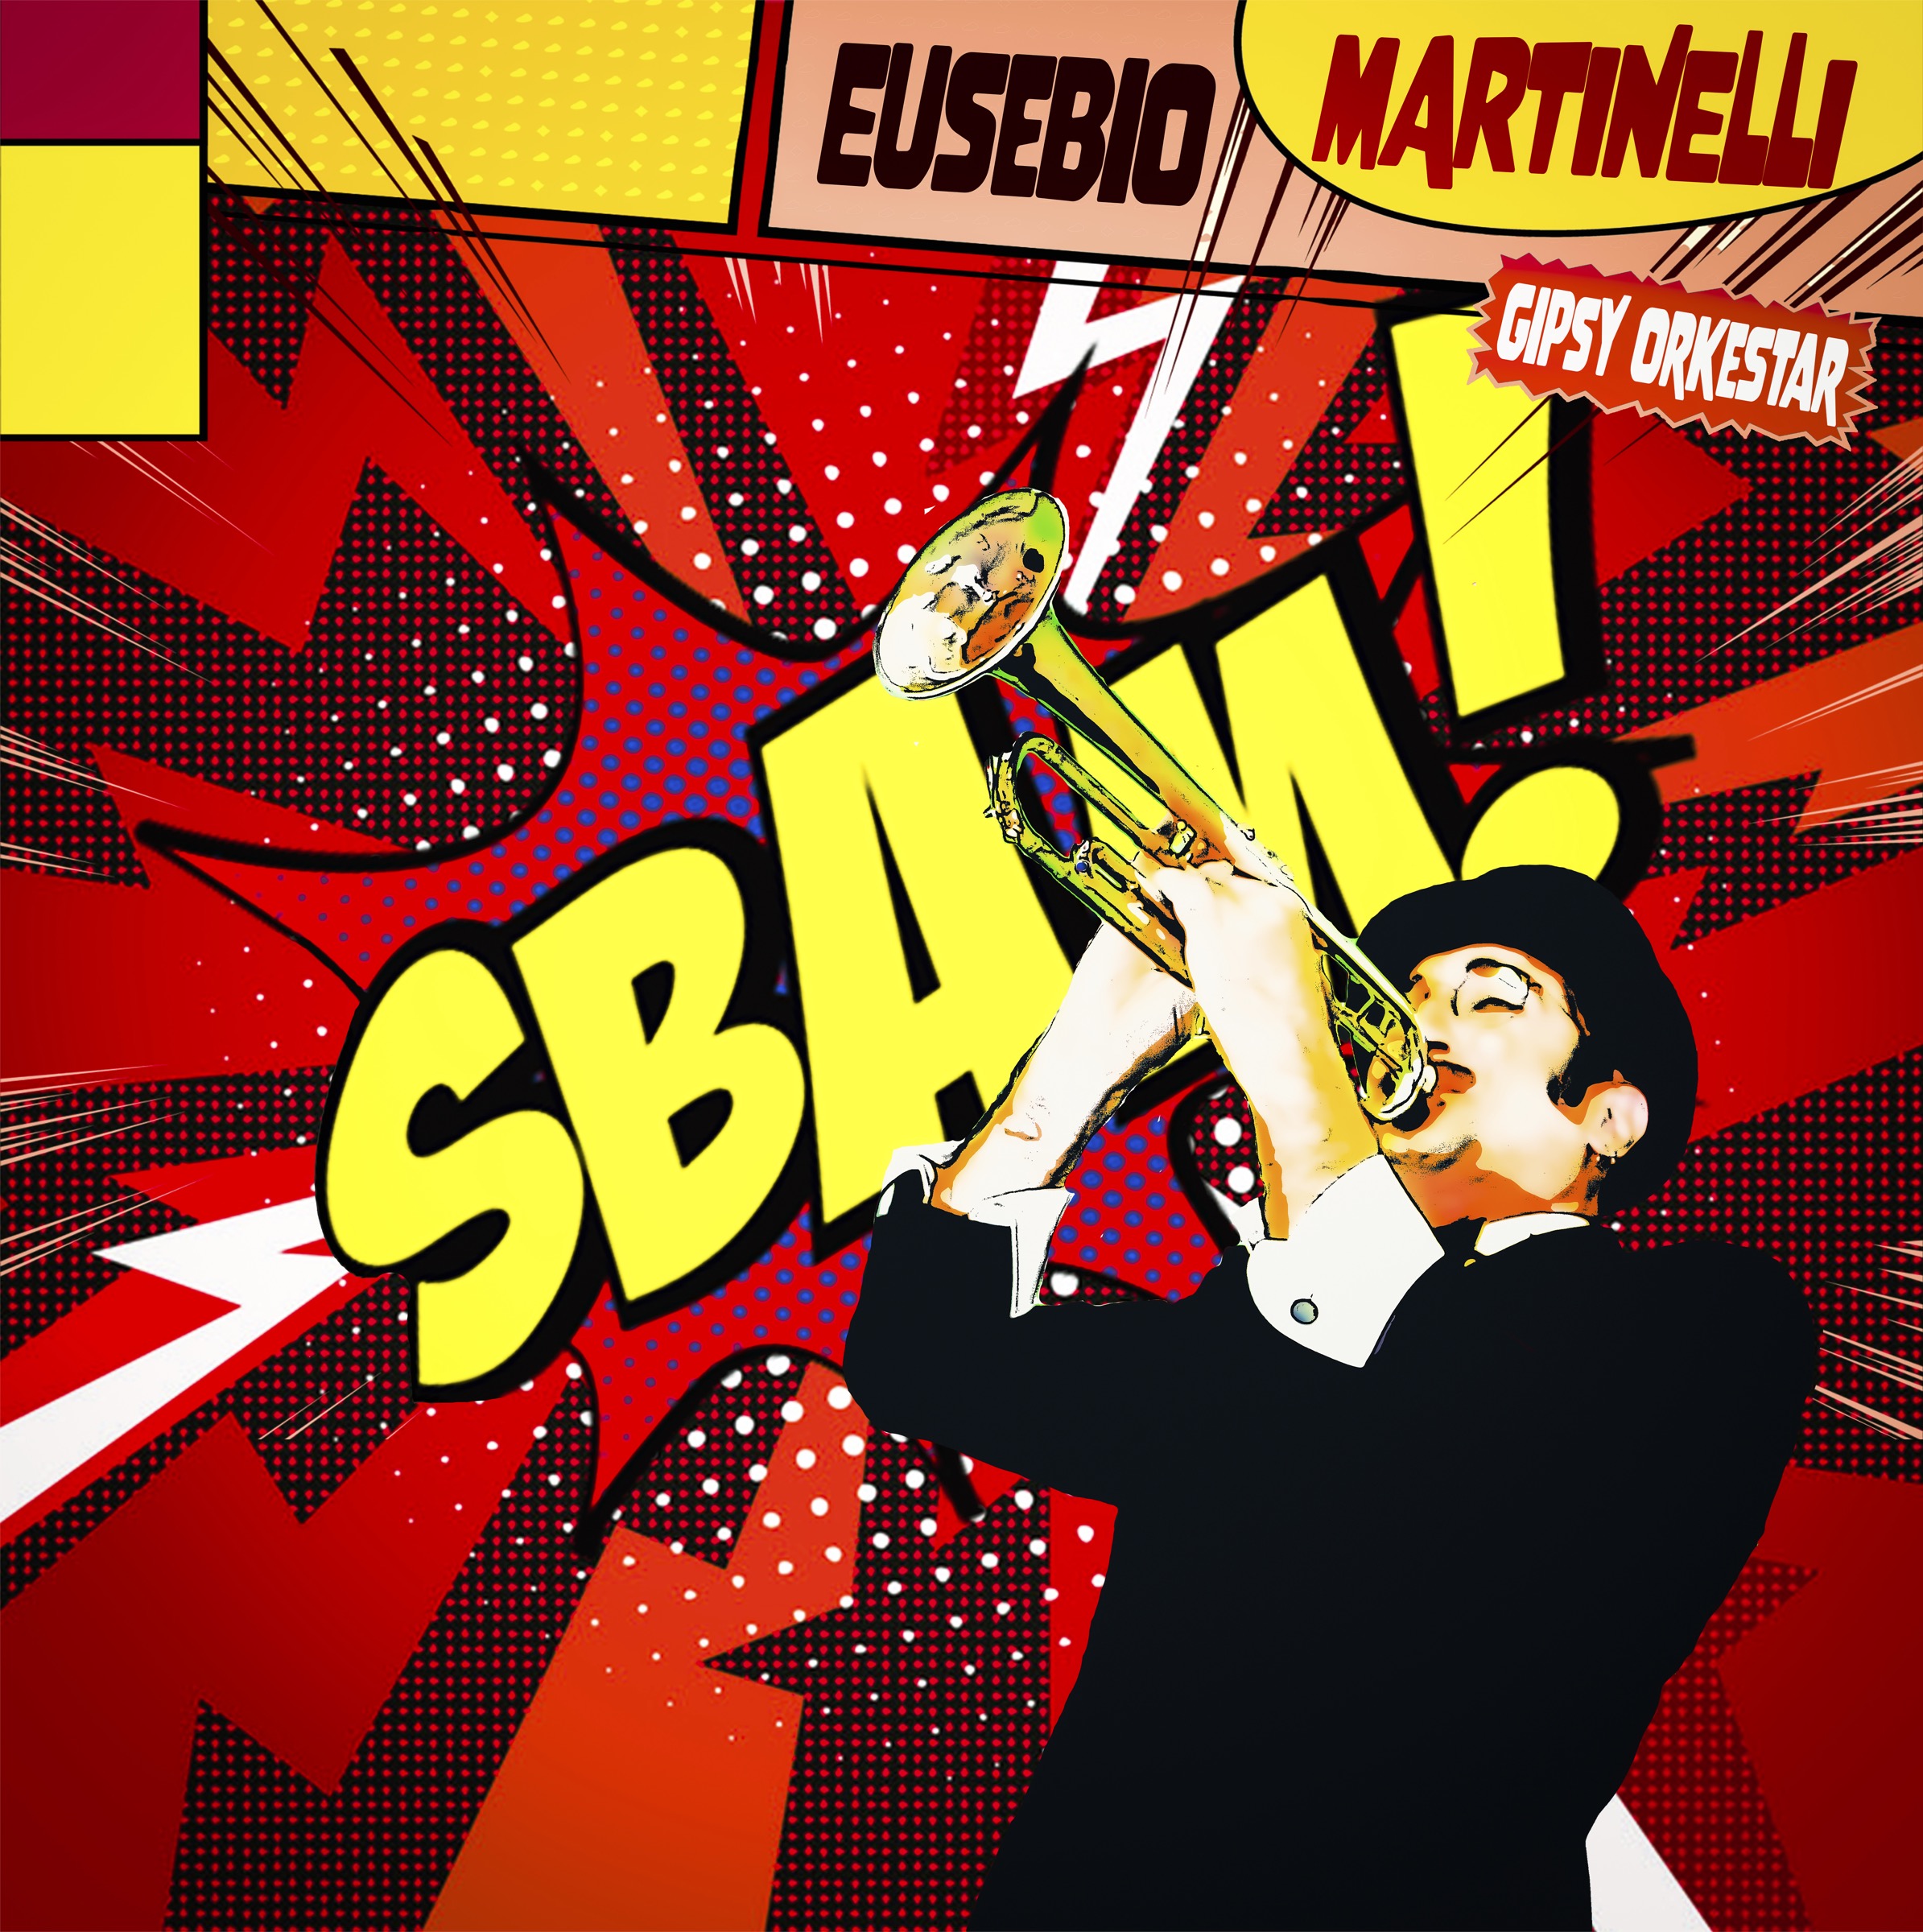 EUSEBIO MARTINELLI GIPSY ORKESTAR “Sbam!” è il nuovo album che segna la rinascita del gruppo del cantautore emiliano